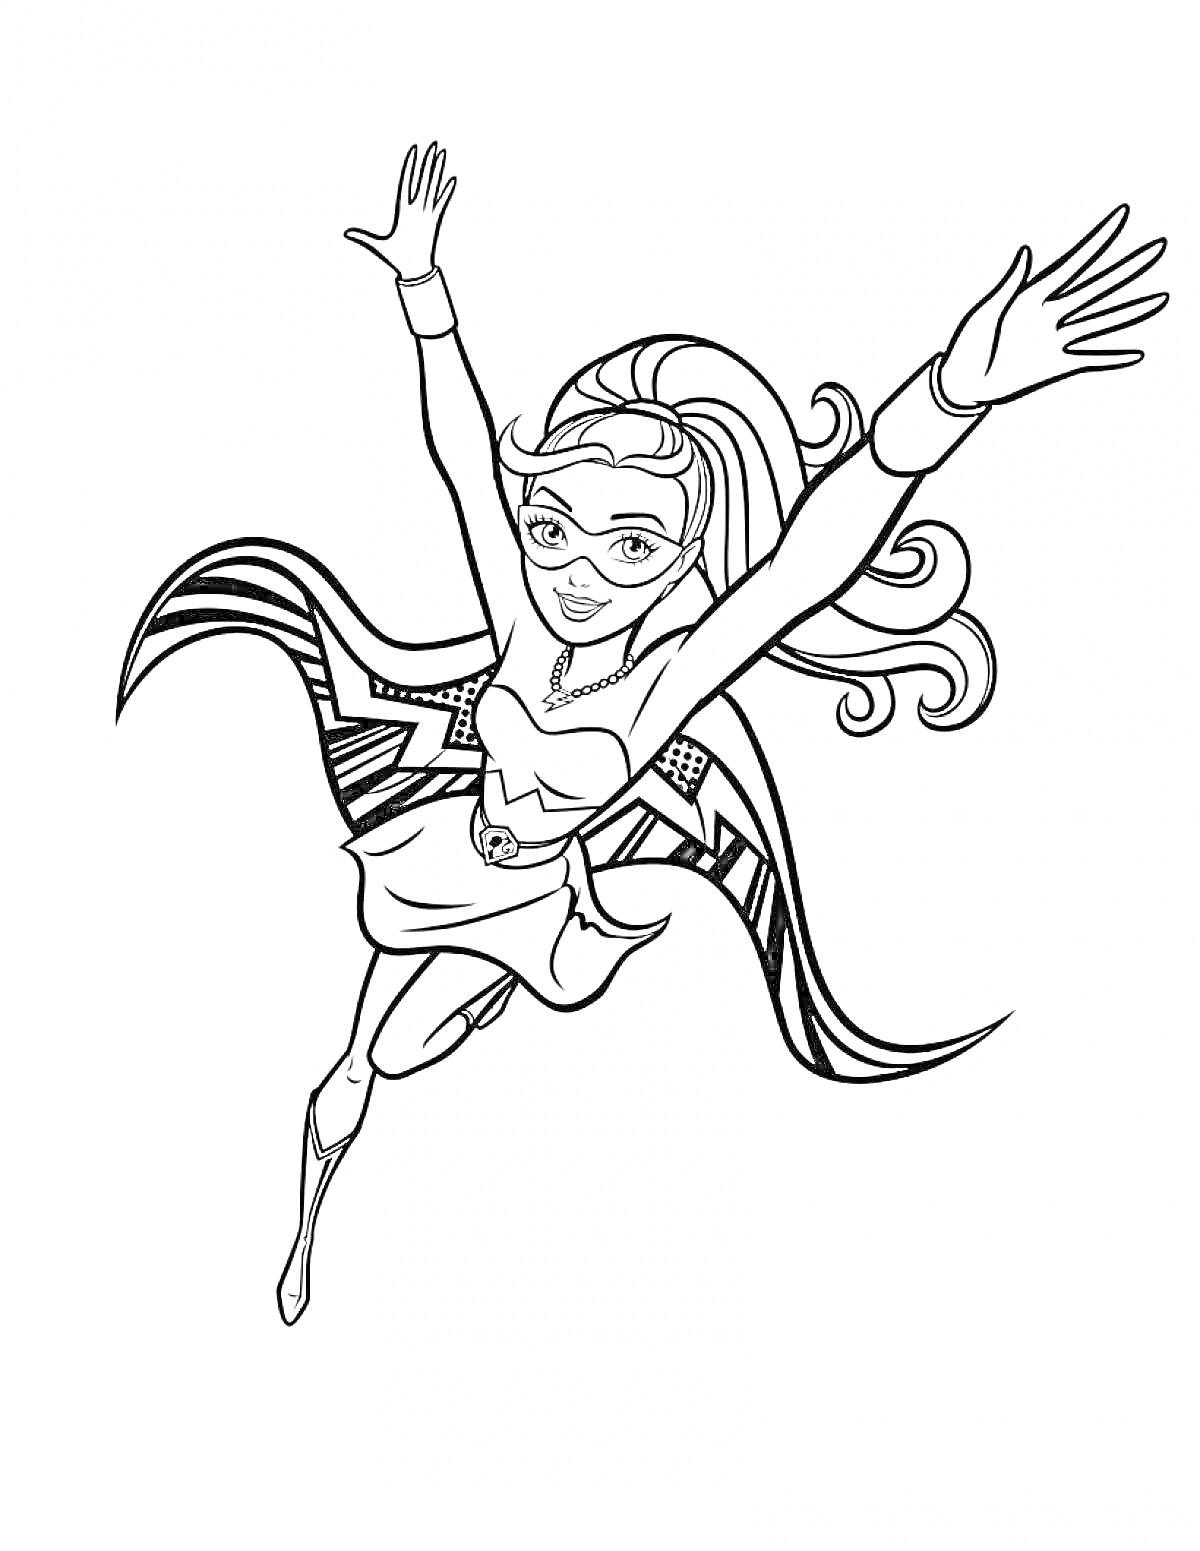 Барби Супер Принцесса в воздухе с распахнутыми руками, плащом и маской на лице